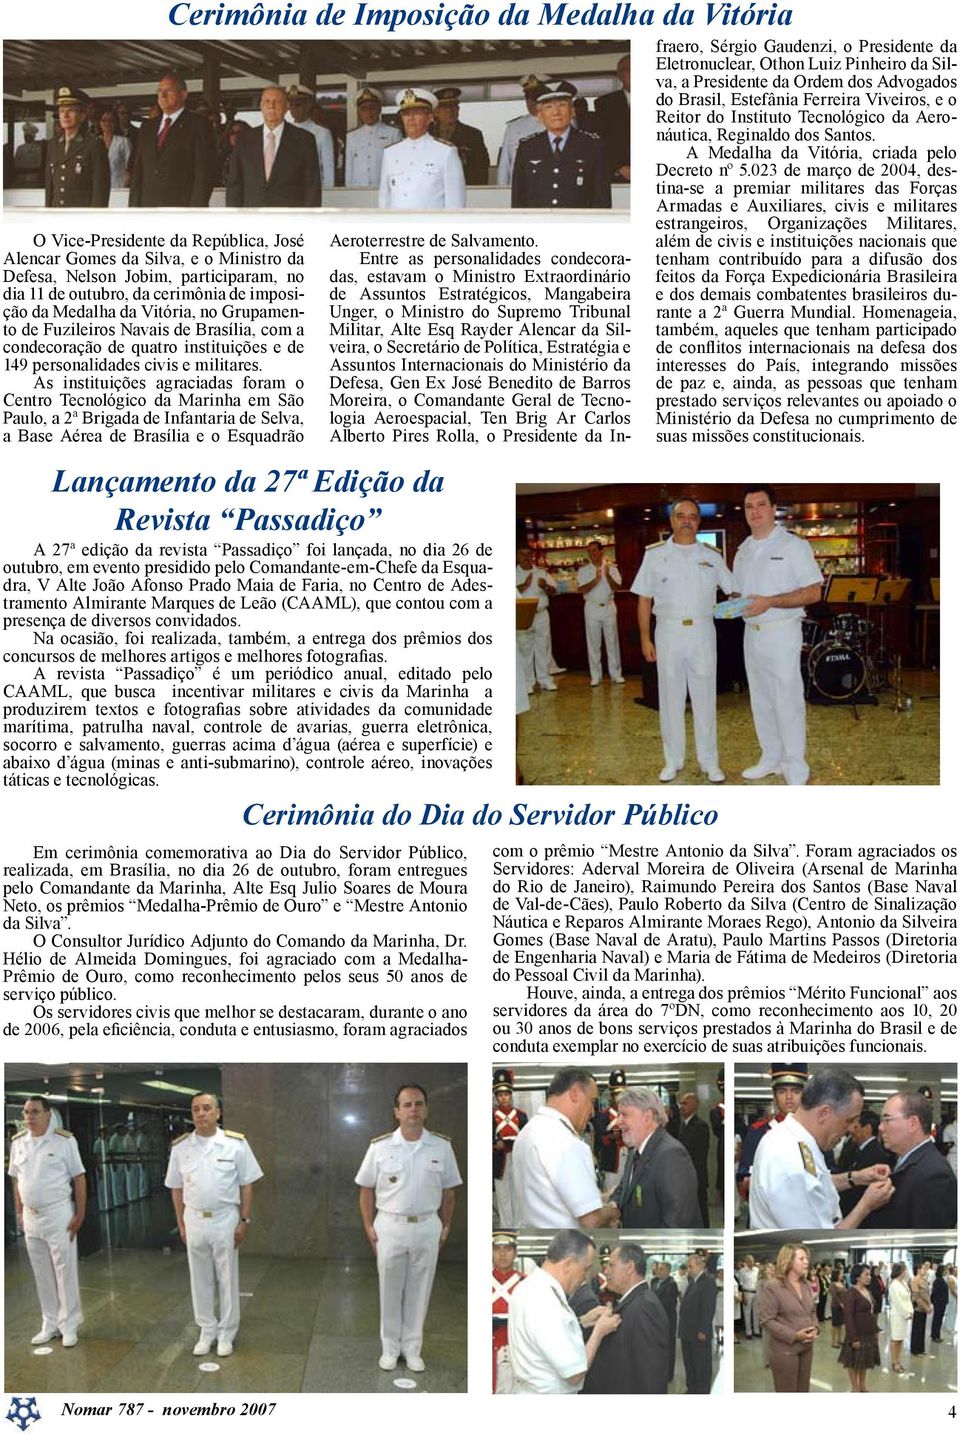 As instituições agraciadas foram o Centro Tecnológico da Marinha em São Paulo, a 2ª Brigada de Infantaria de Selva, a Base Aérea de Brasília e o Esquadrão Cerimônia de Imposição da Medalha da Vitória